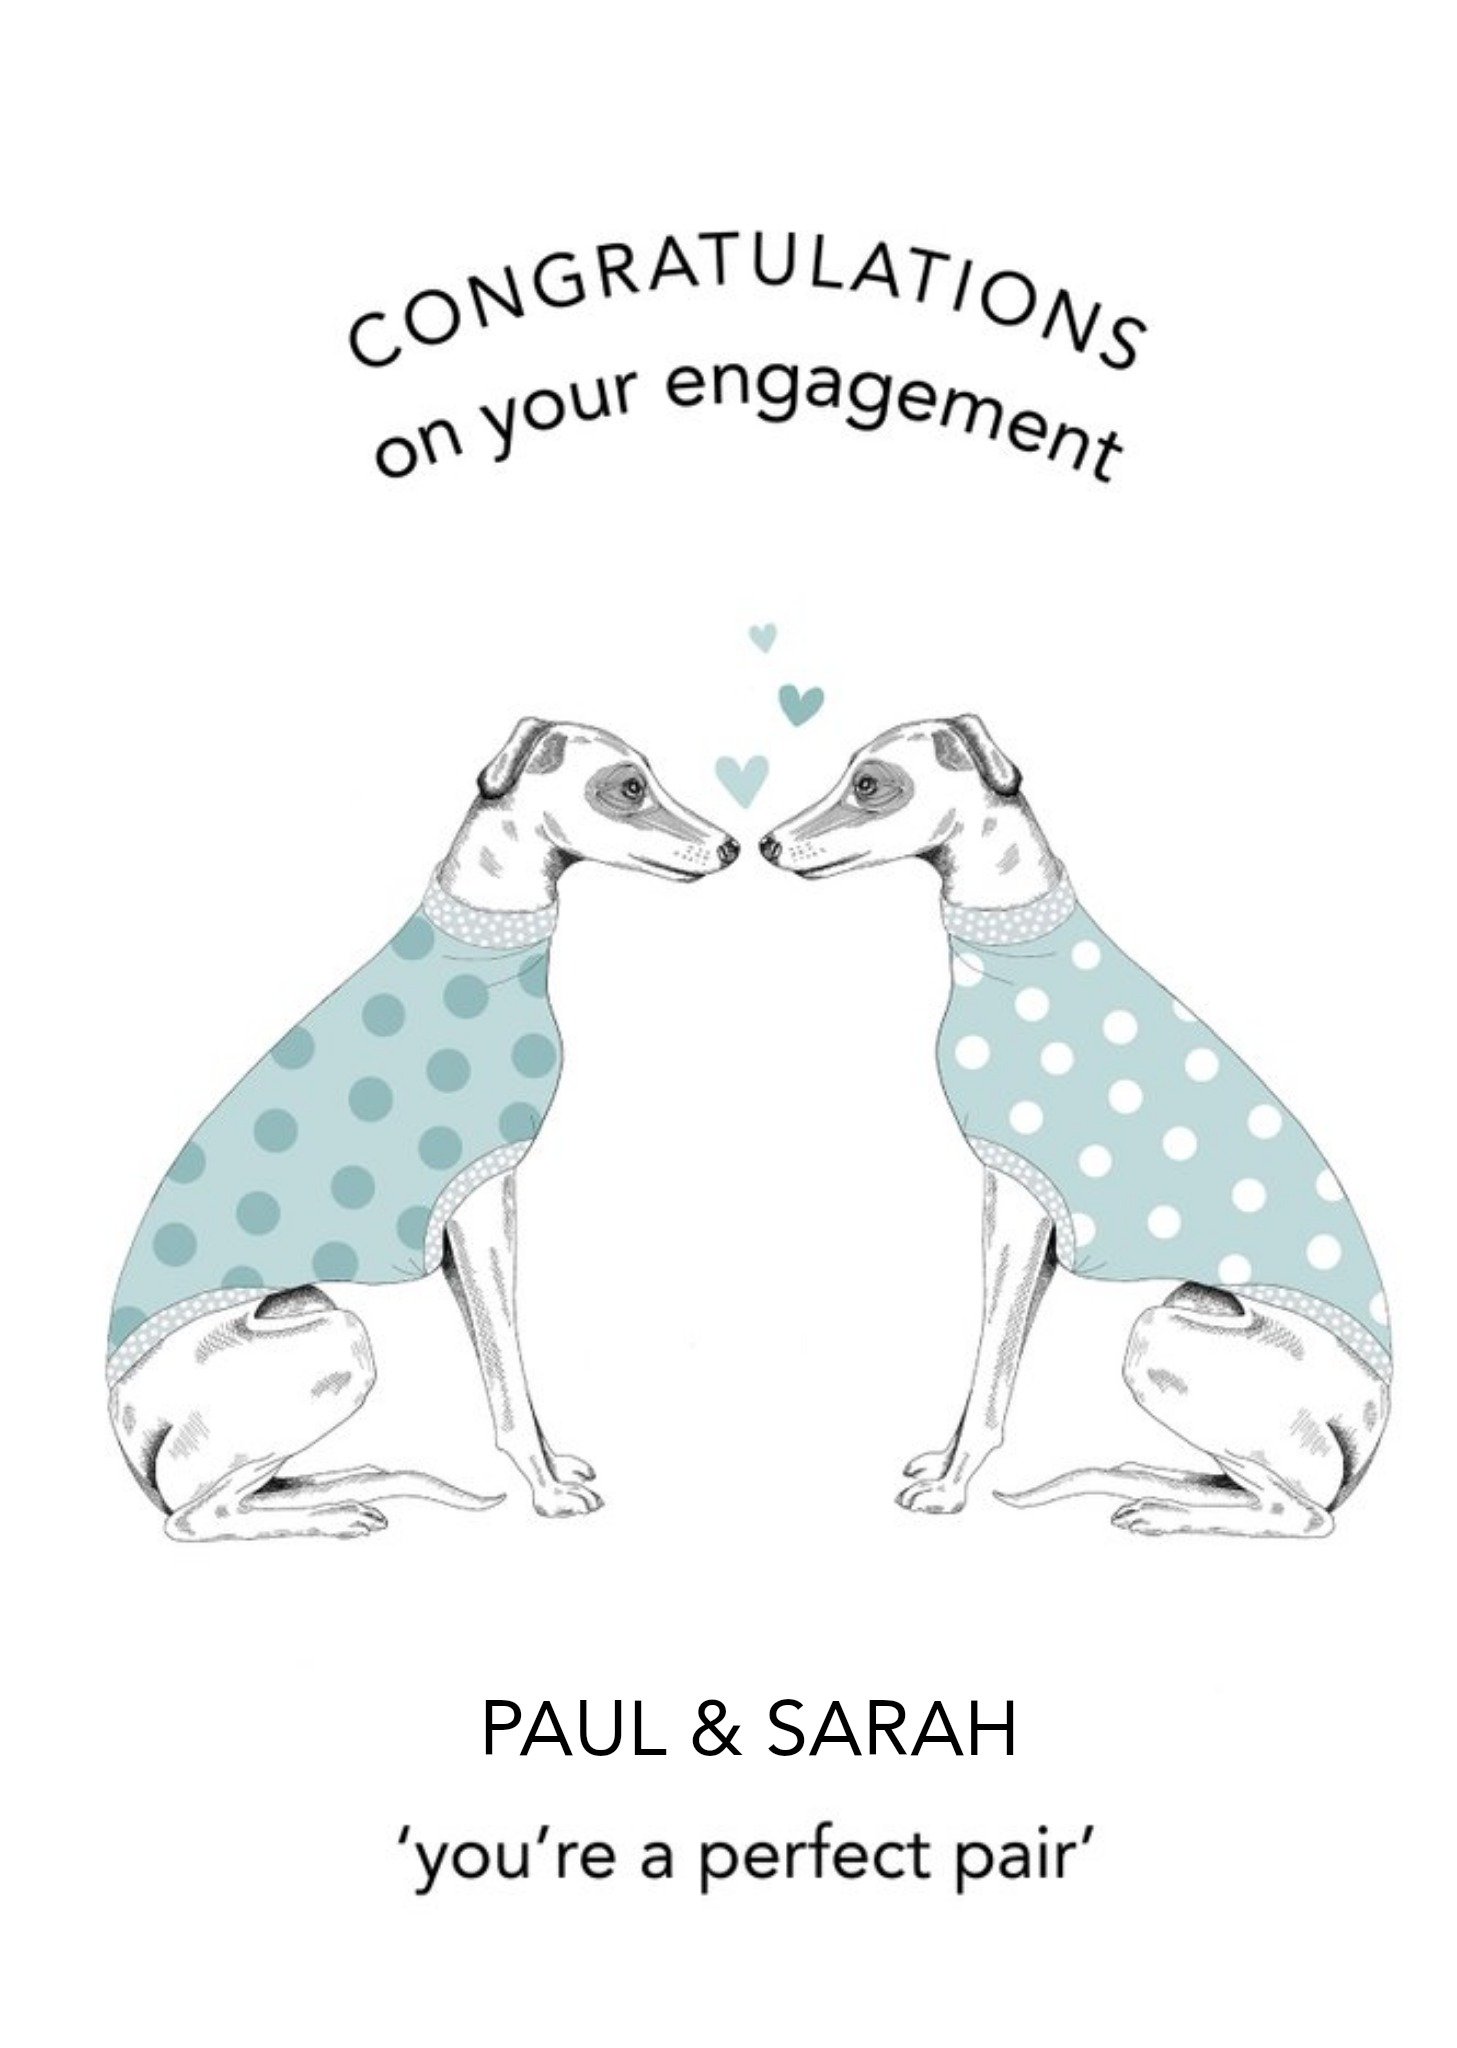 Moonpig Dotty Dog Art Dogs Hearts Congratulations Wedding Card Ecard